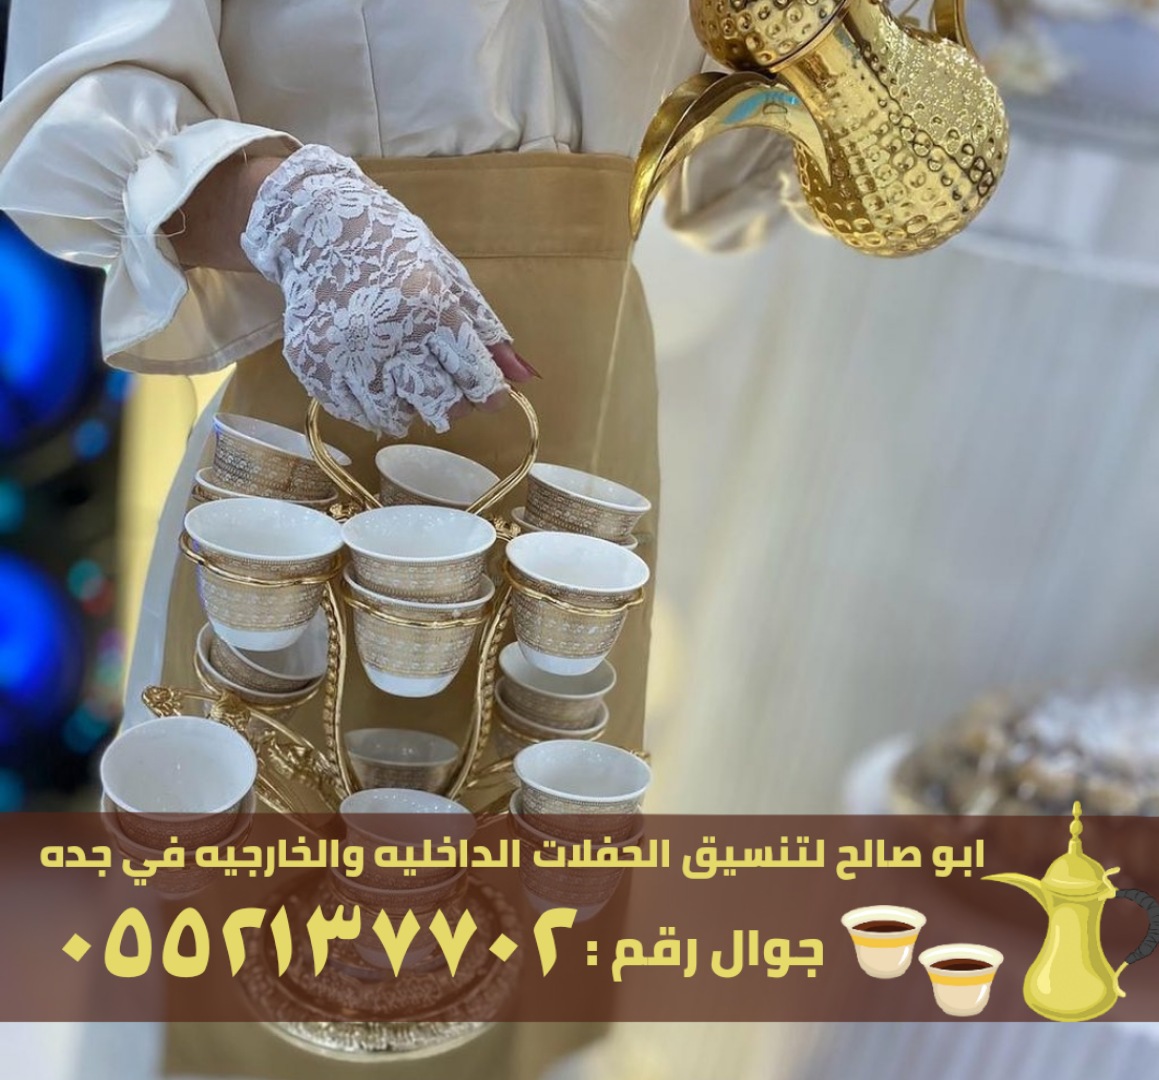 طاقم مباشرين قهوة في جدة, 0552137702 P_2601tgxg81